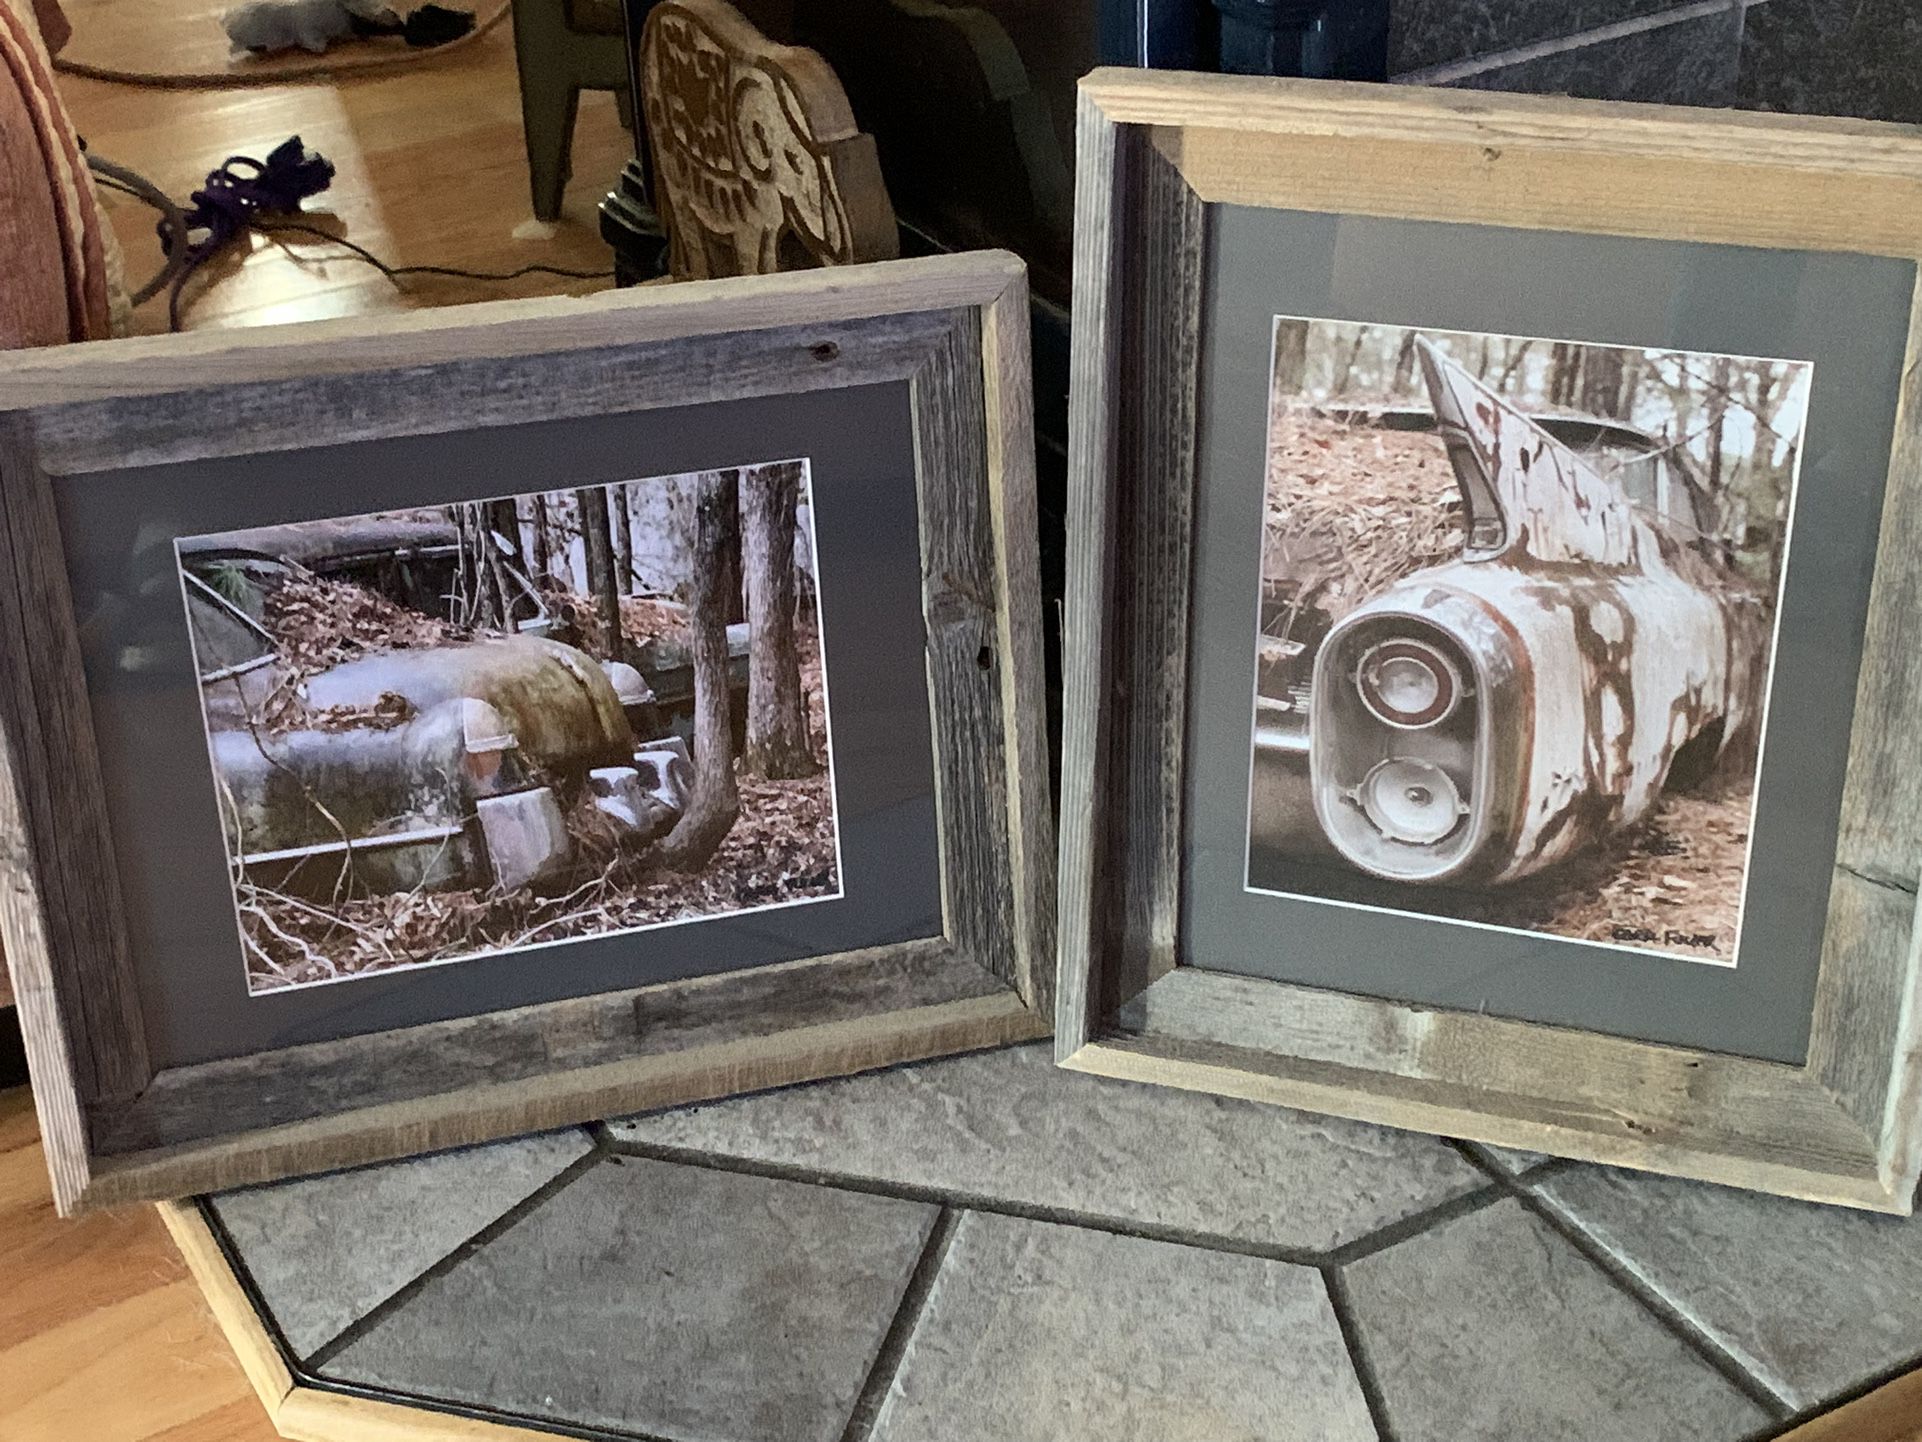 Signed & Framed Pair Vintage Old Car Photographs